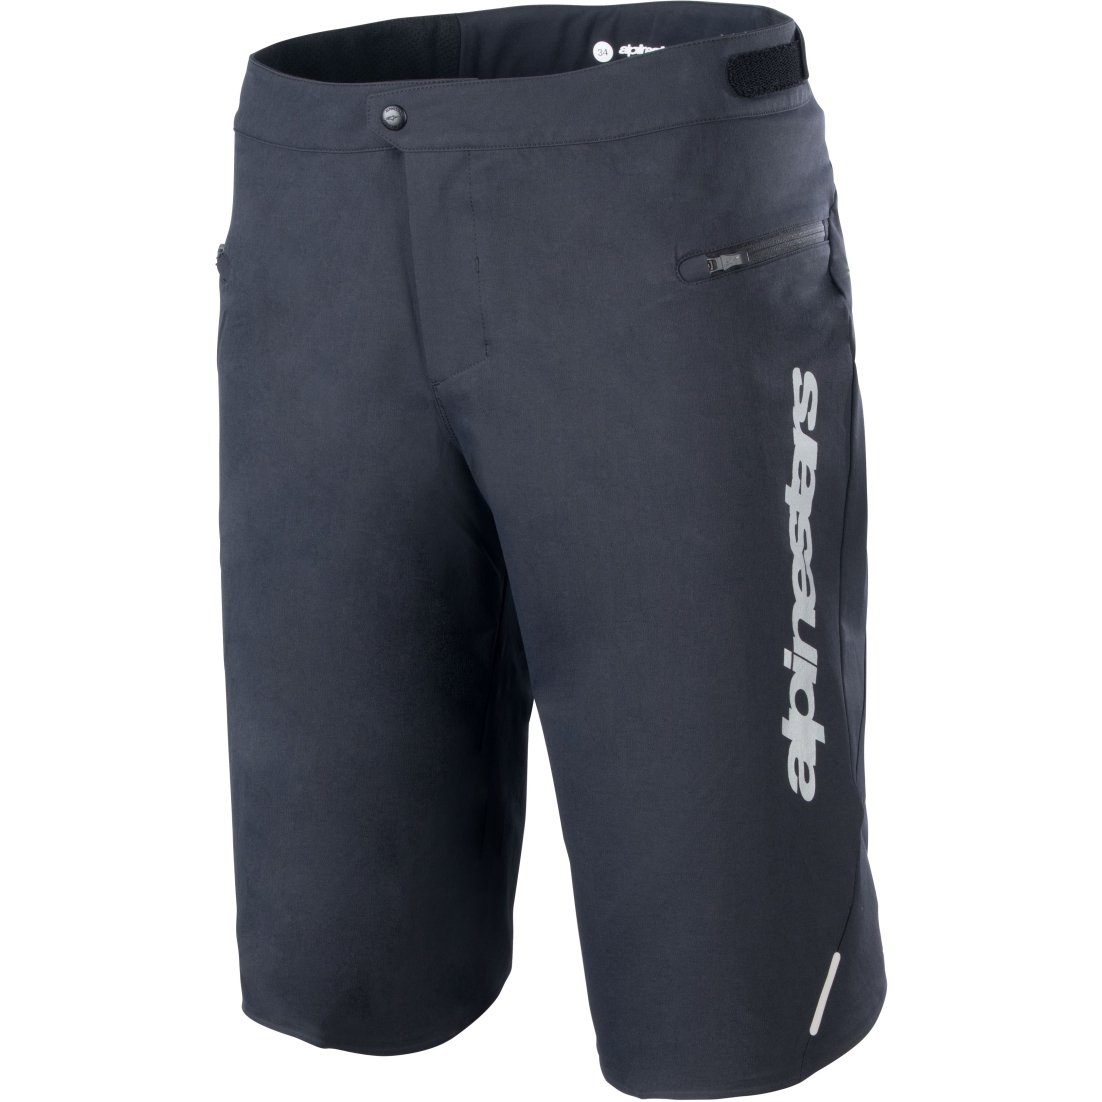 Produktbild von Alpinestars A-Dura Elite Shorts Herren - schwarz